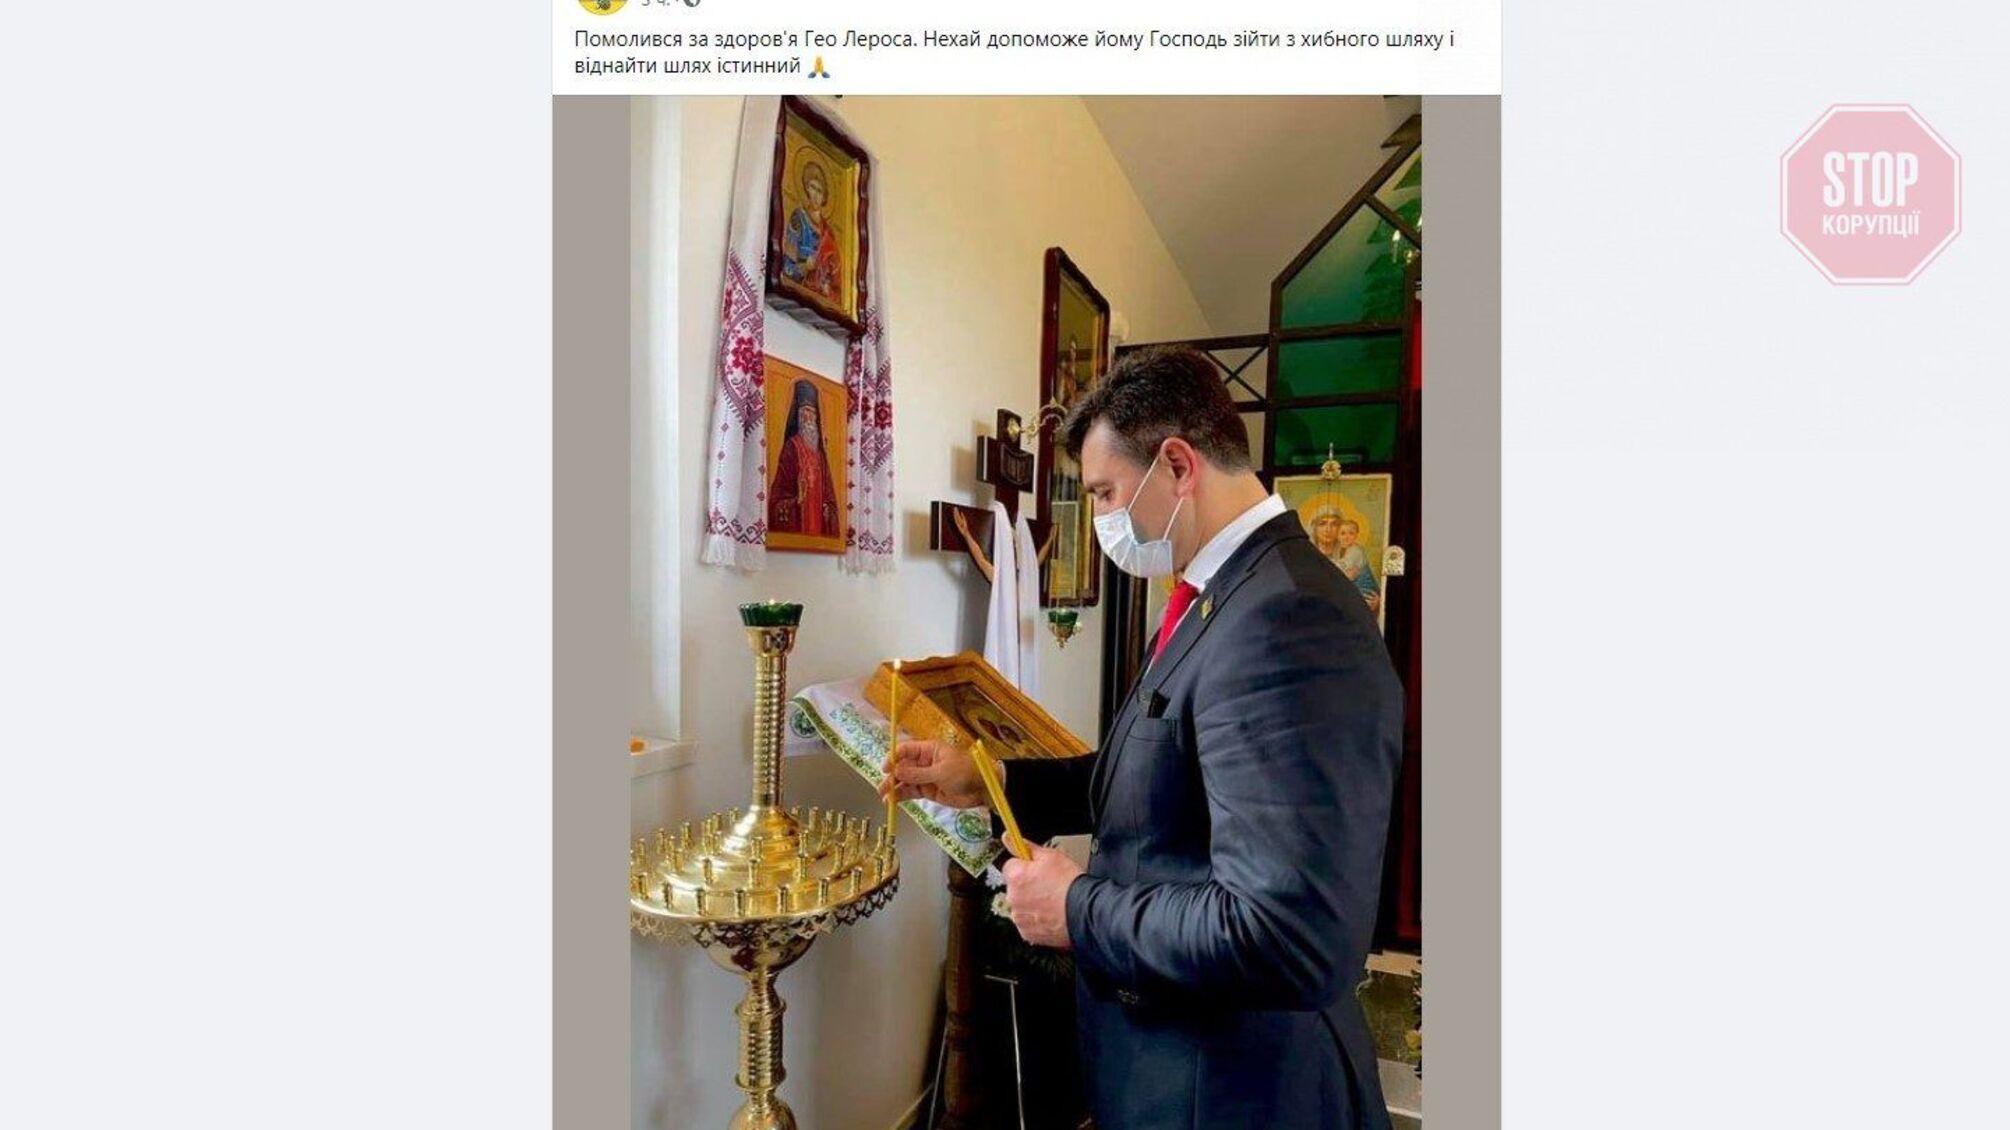 Тищенко поставив свічку за Лероса